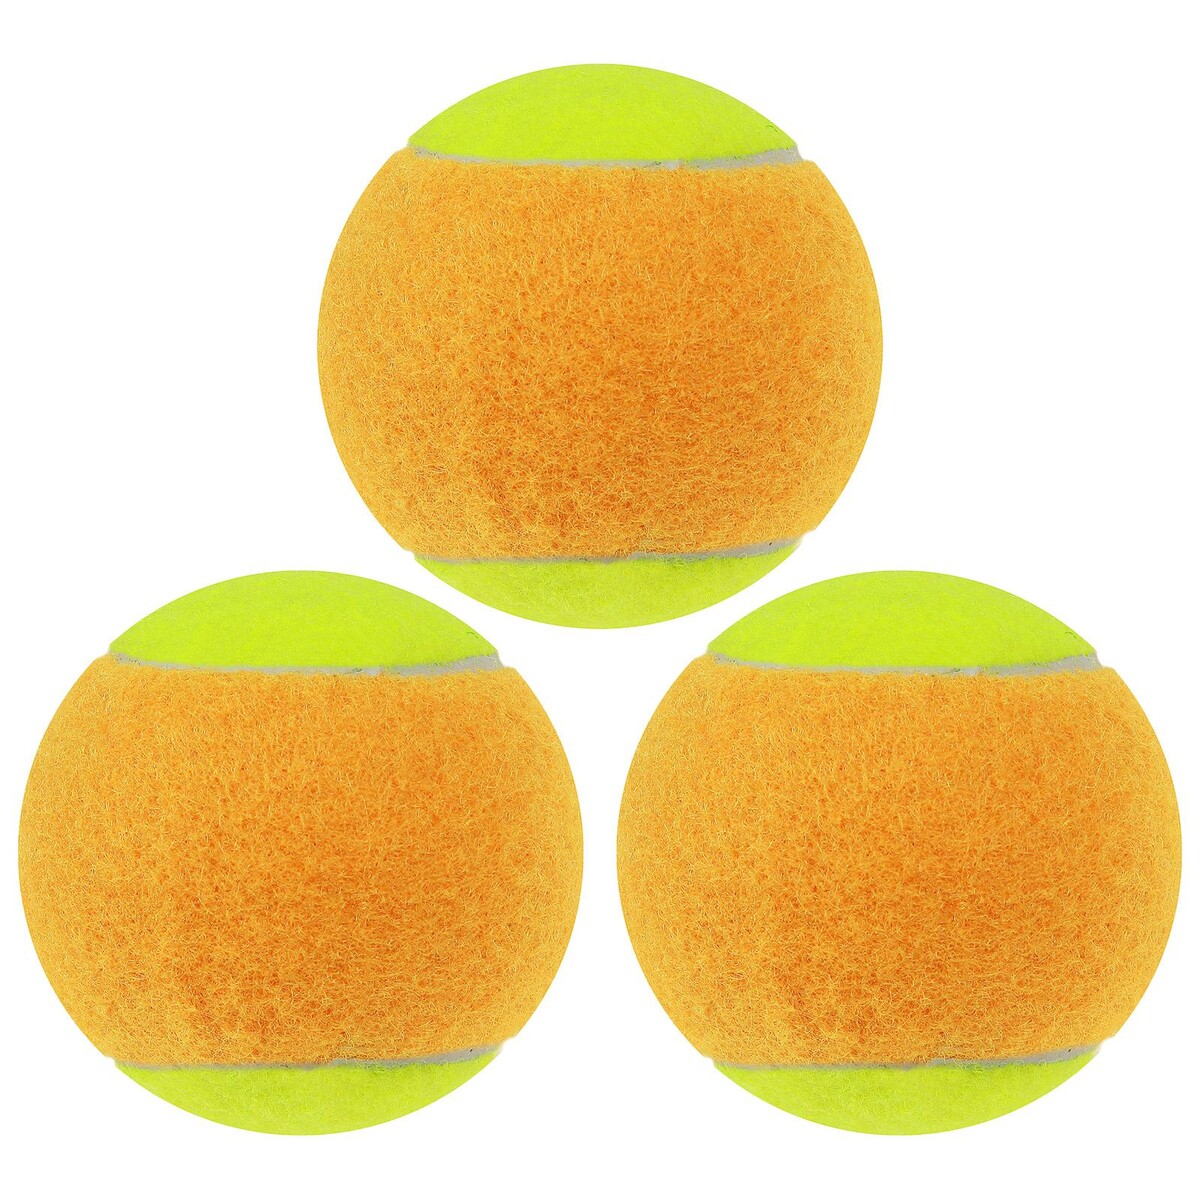 Набор мячей для большого тенниса onlytop swidon, 3 шт. набор массажных мячей ёжик 4 шт а микс